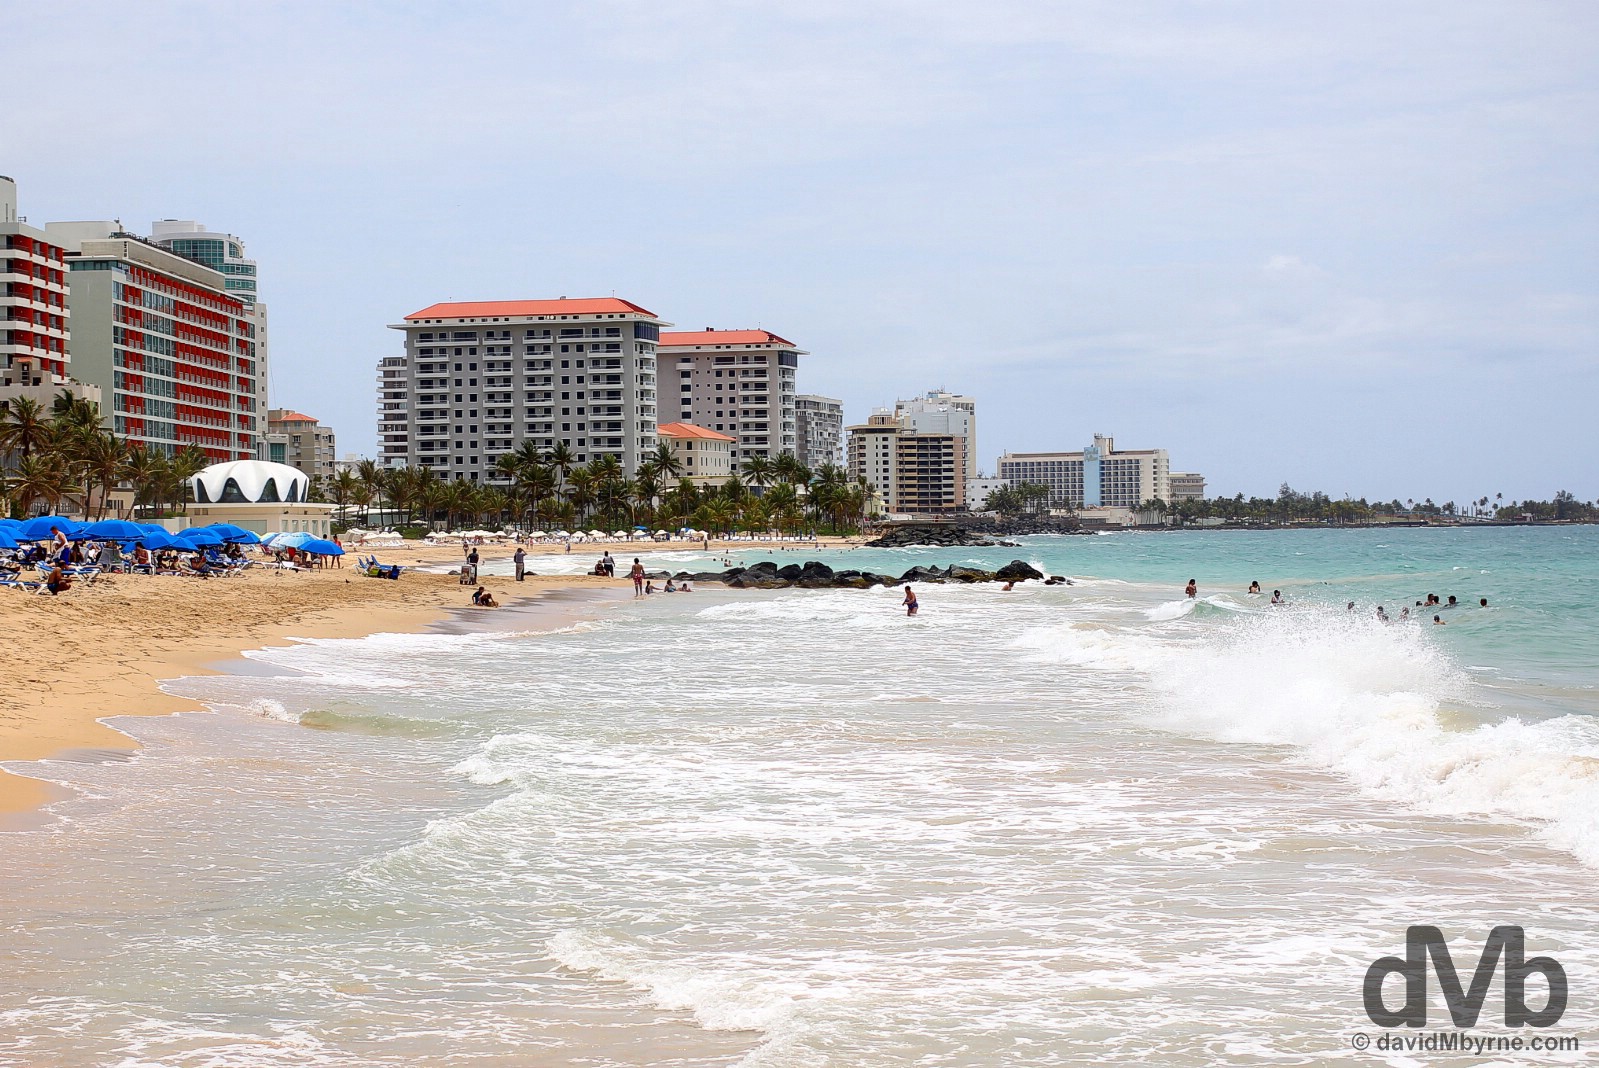 Playa Ocean Park in San Juan, Puerto Rico, Greater Antilles. June 1, 2015.